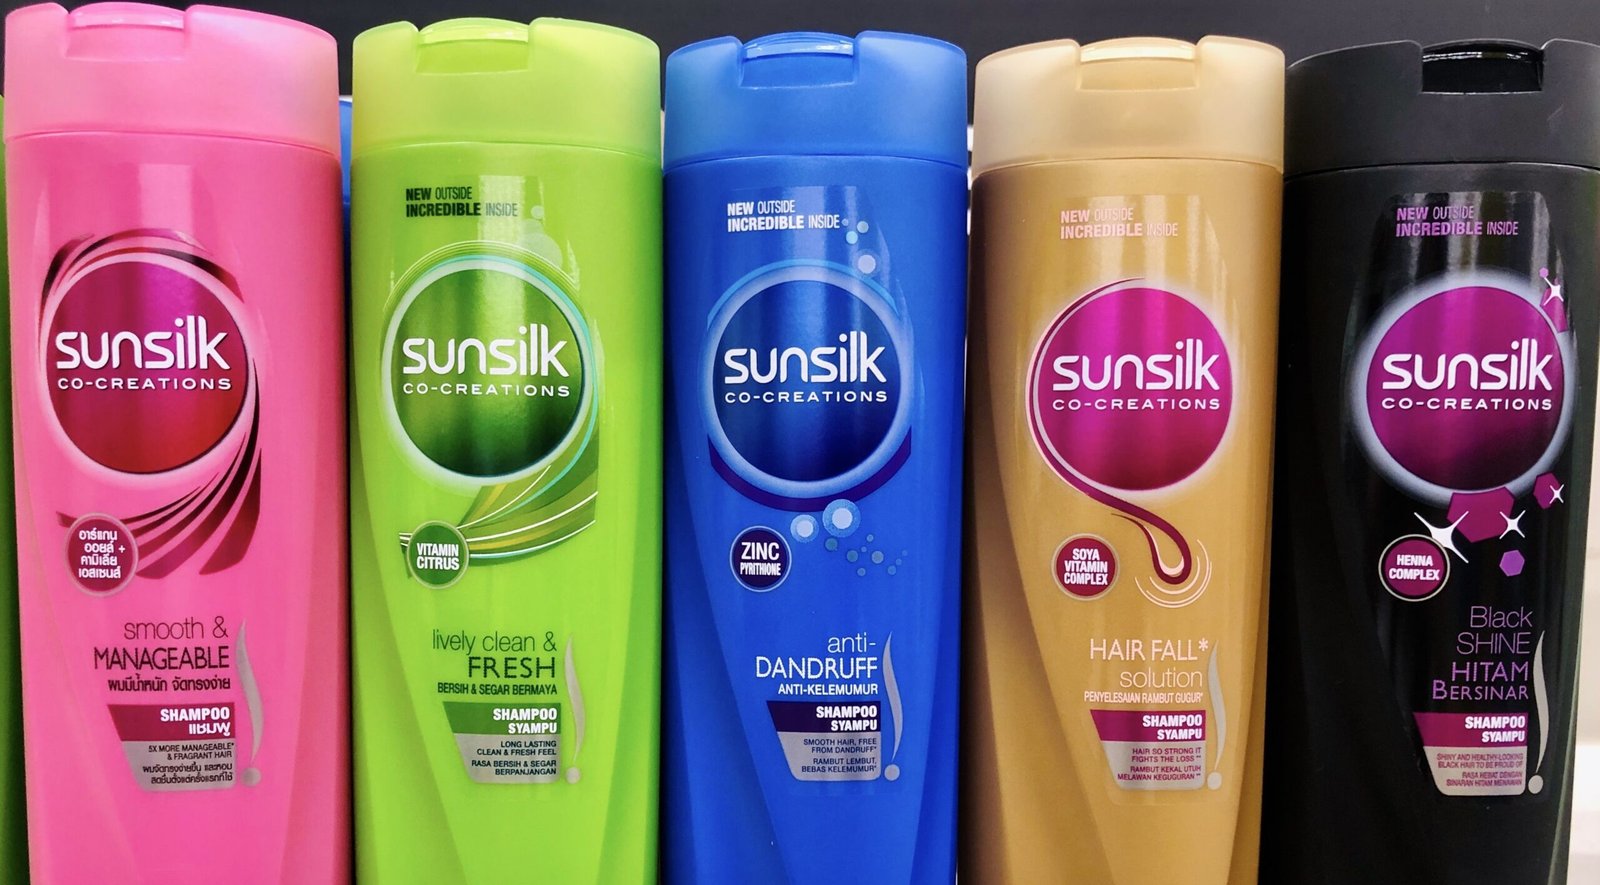 Marketing Strategy of Sunsilk